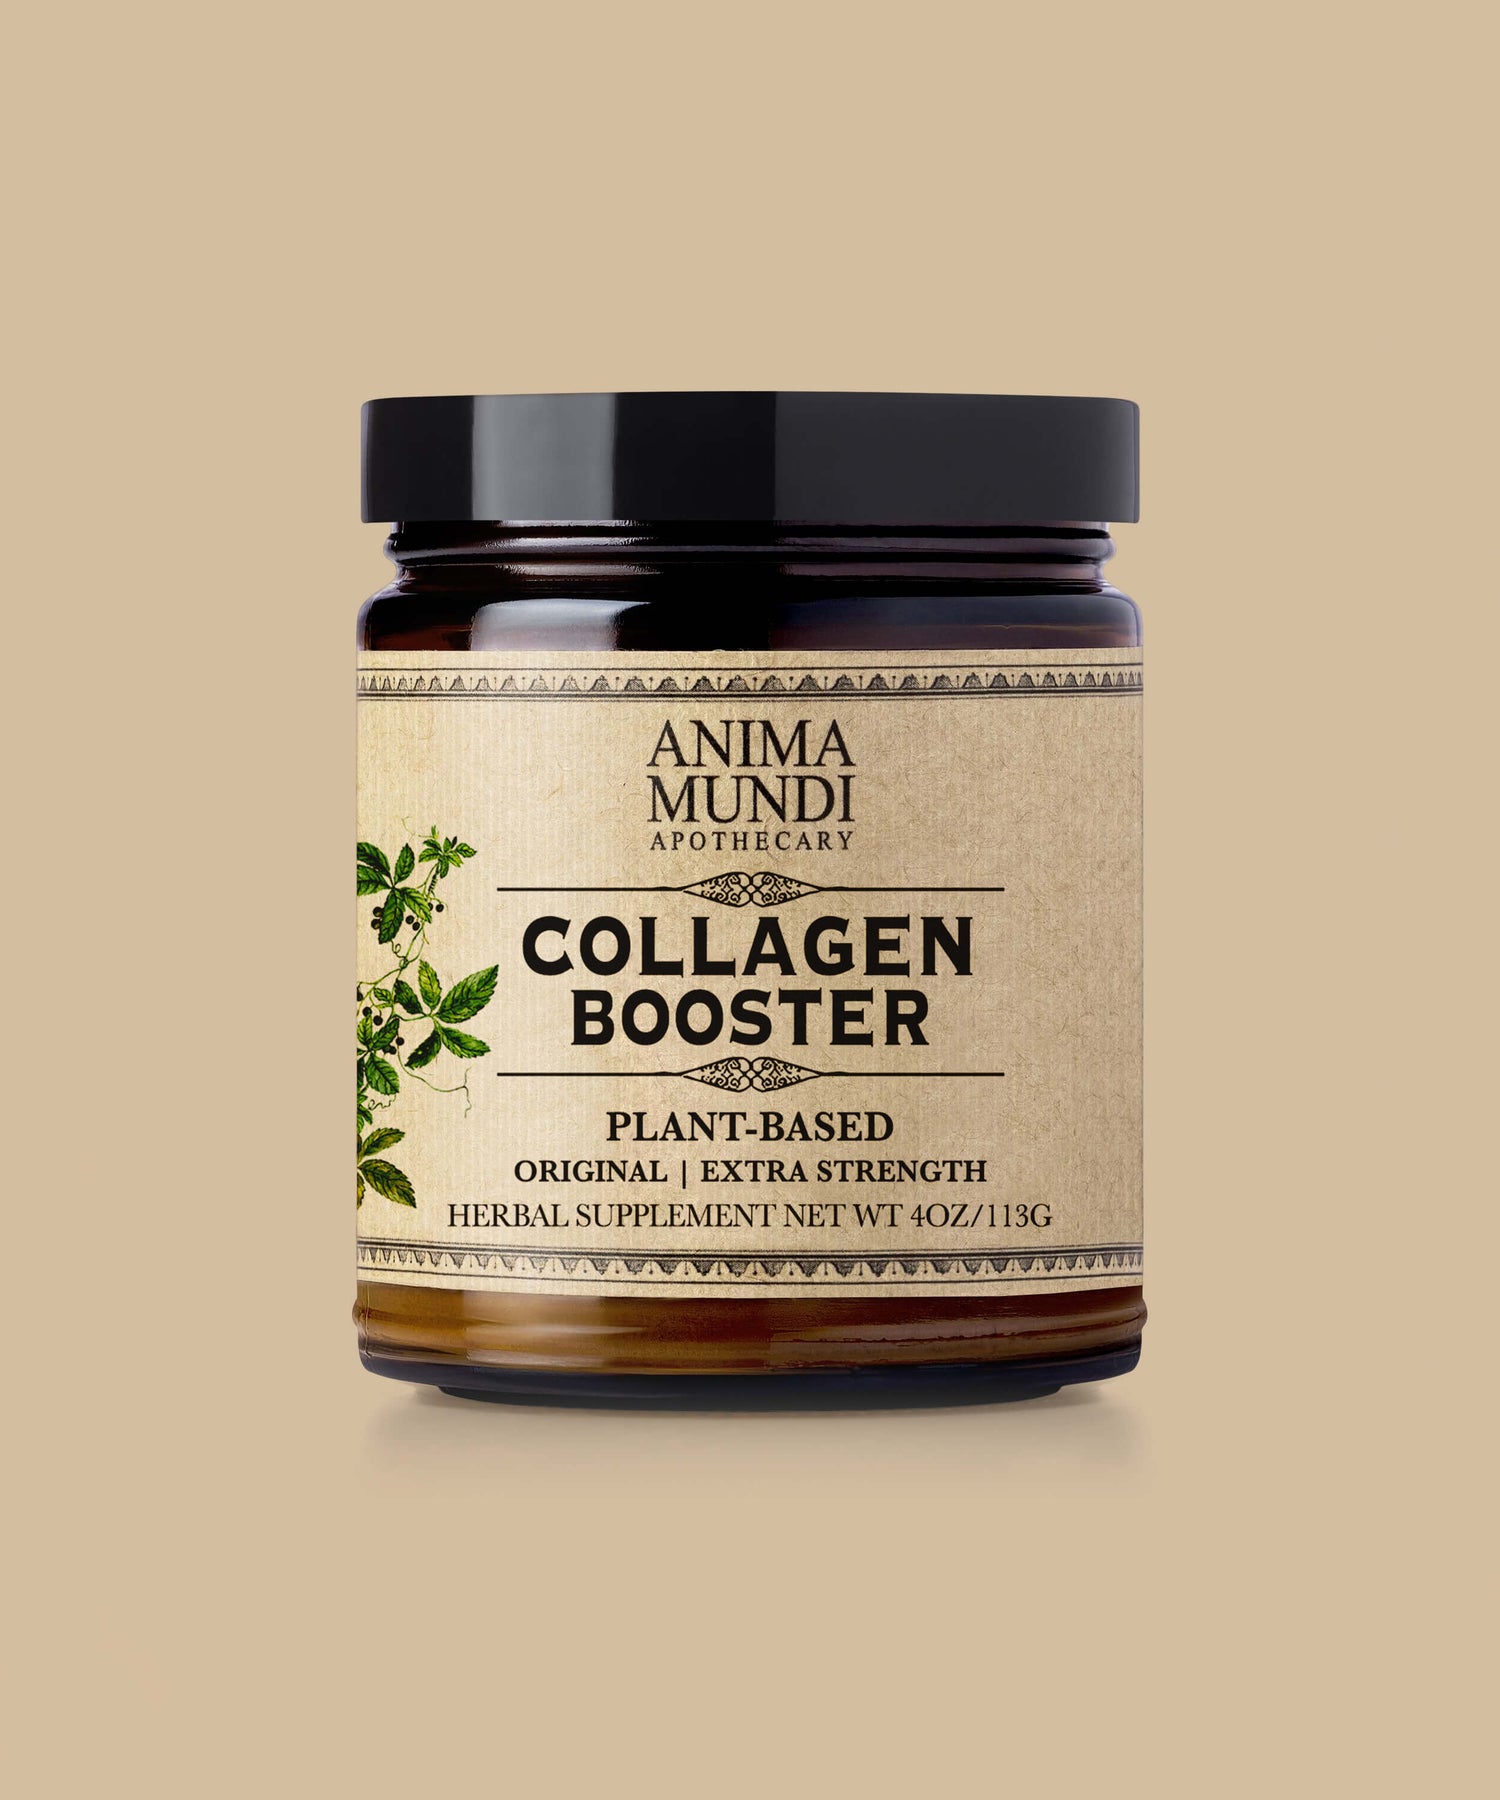 COLLAGEN BOOSTER Powder | Original Flavor